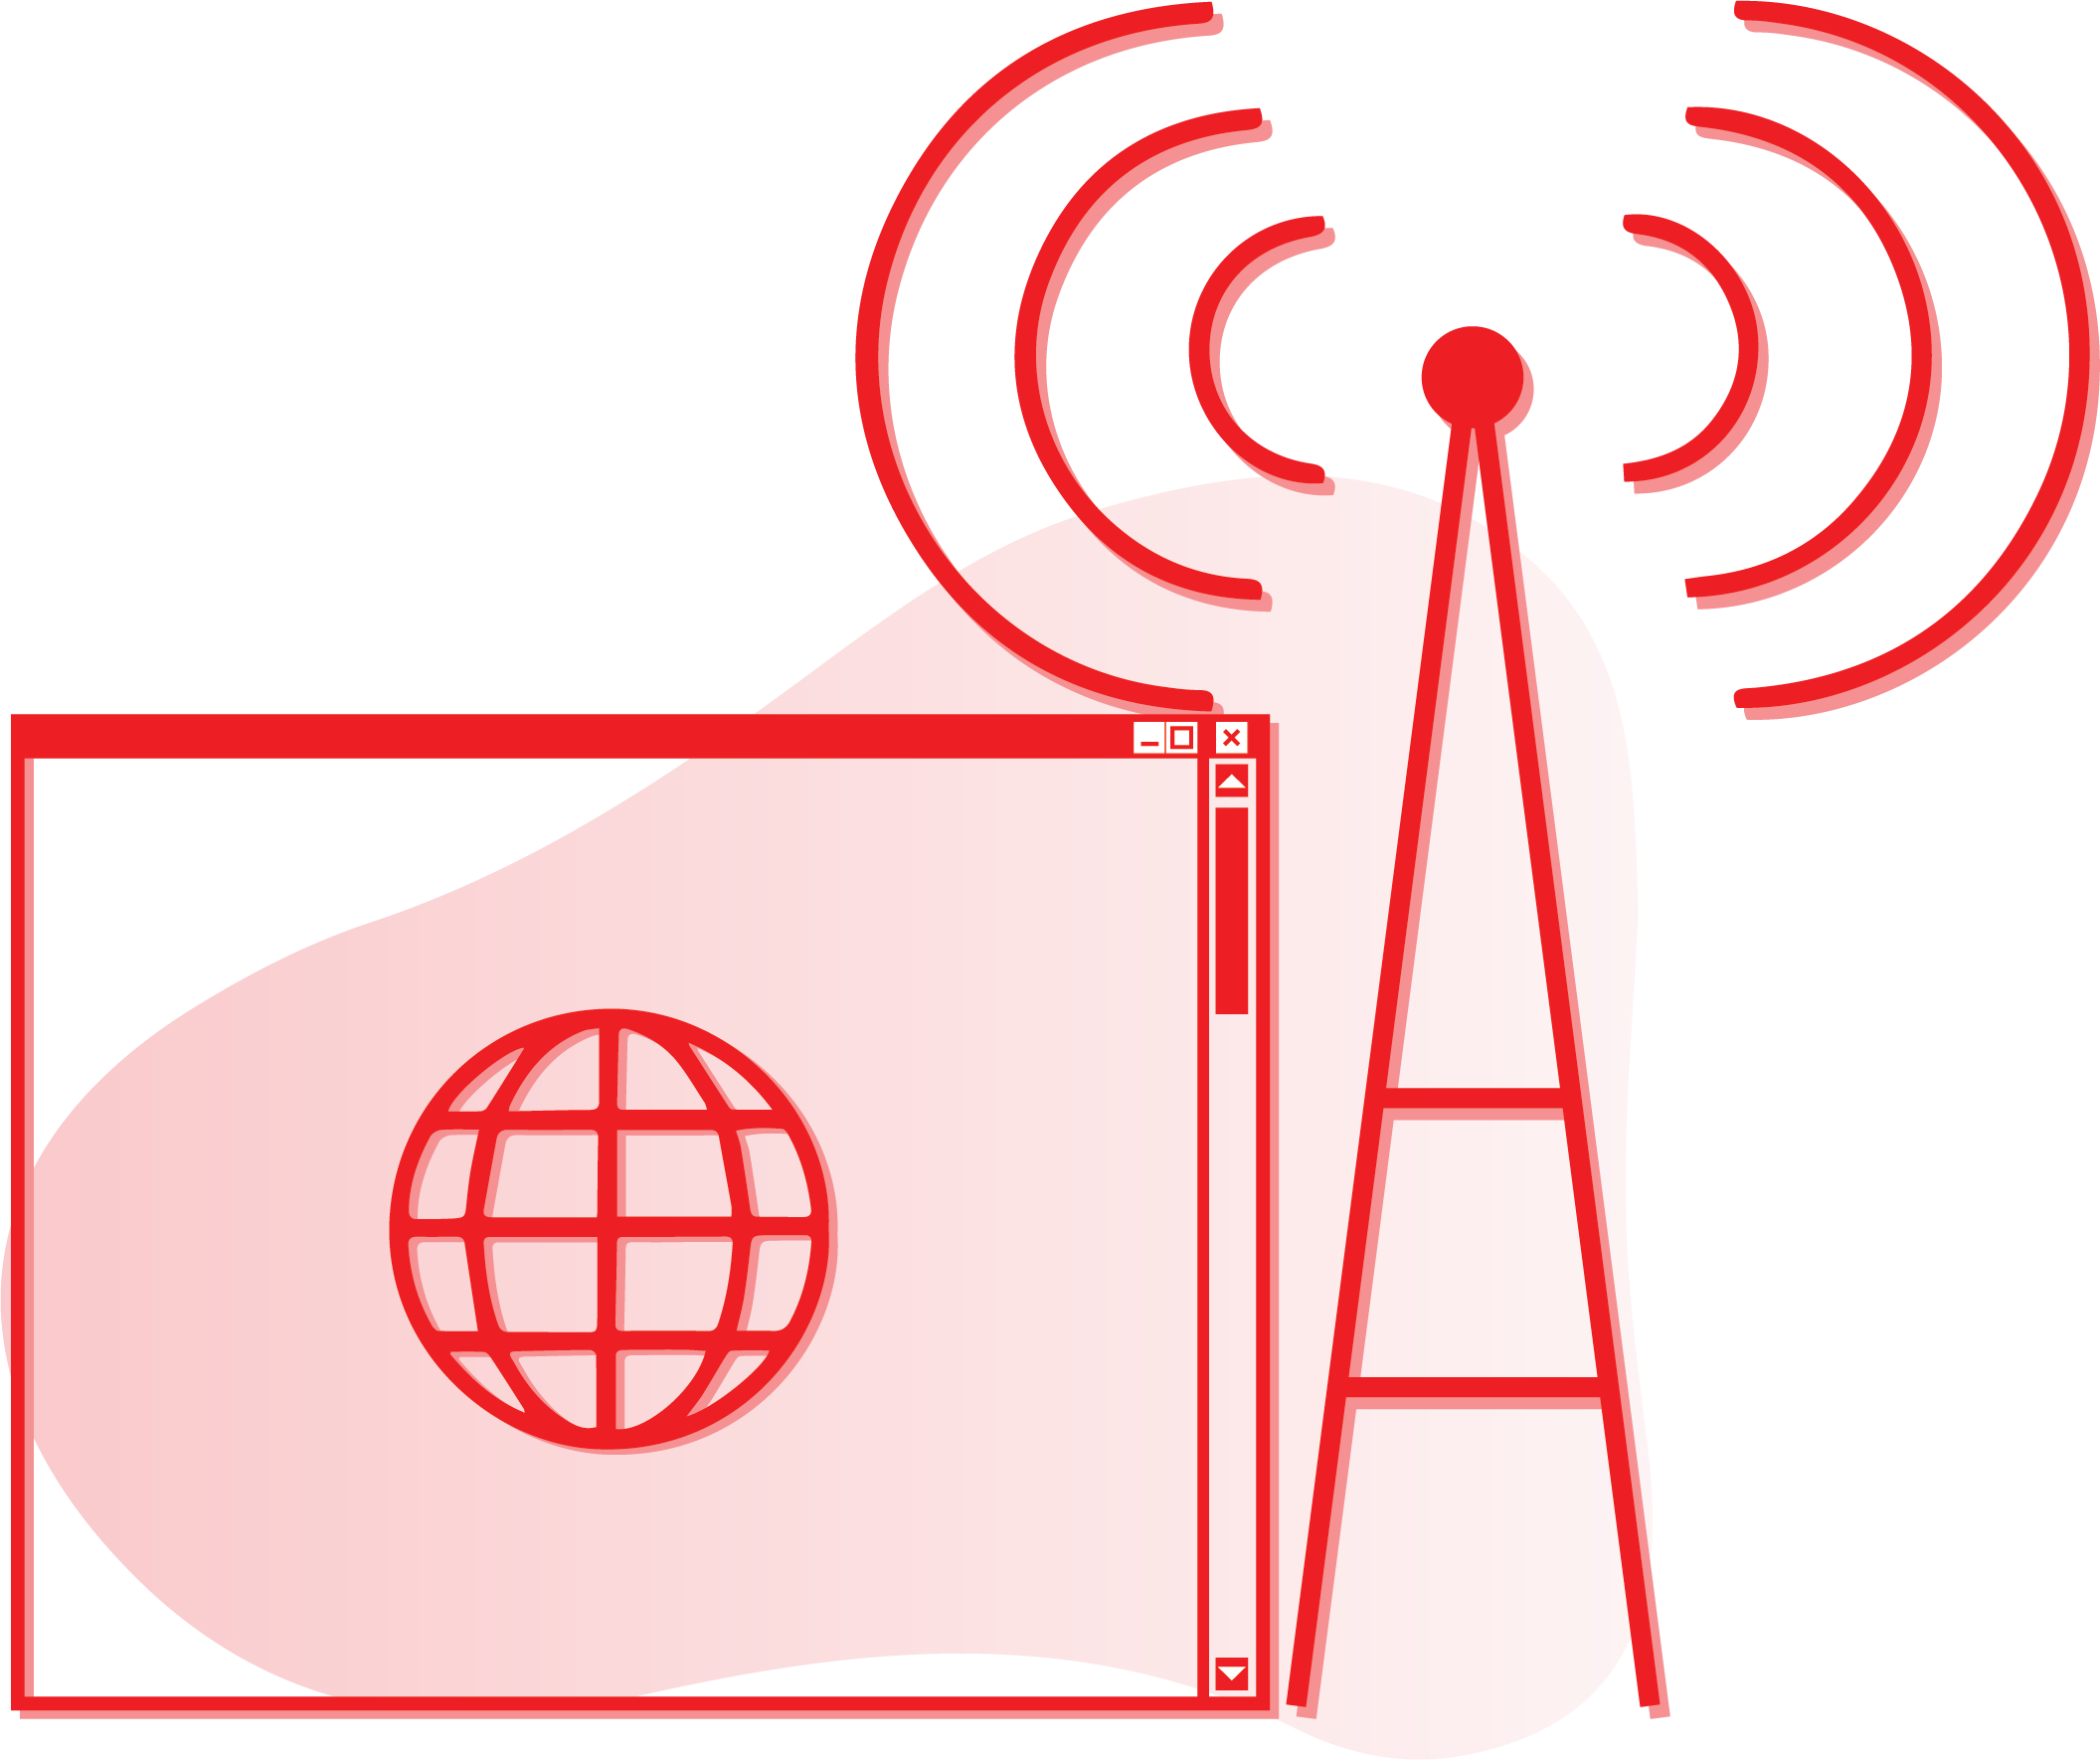 Internet service provider graphic